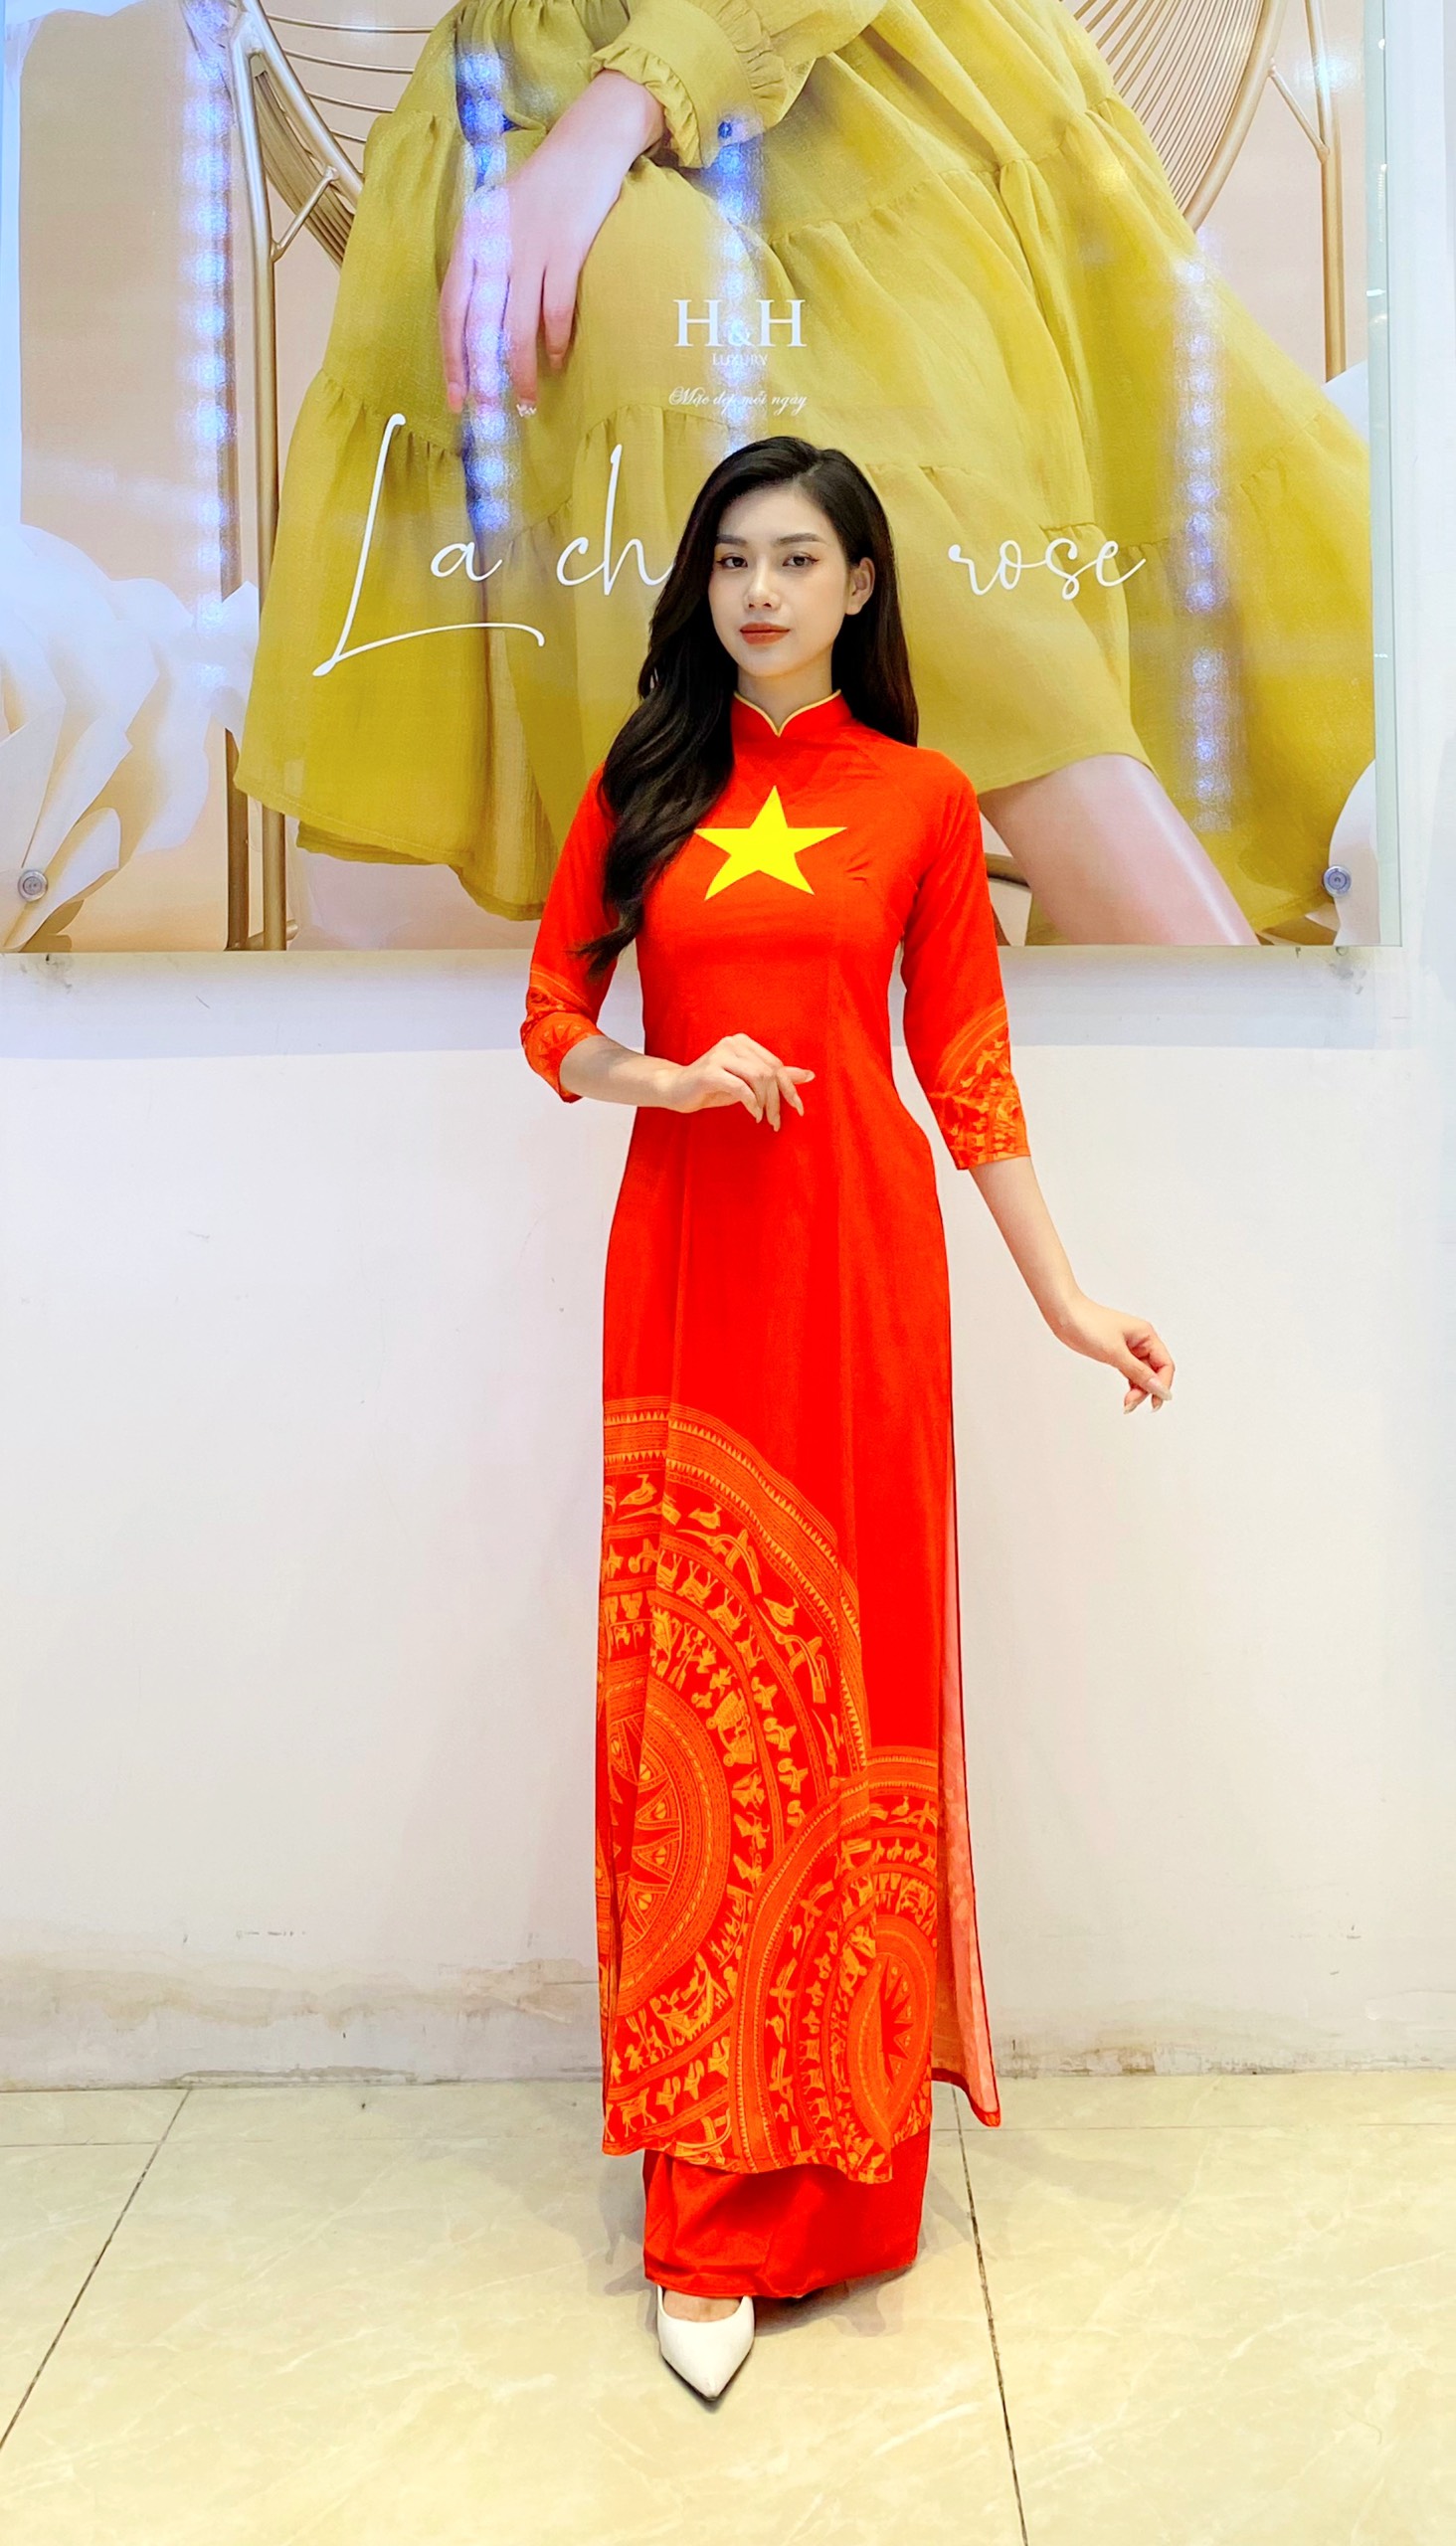 Áo dài lụa là trang phục truyền thống đẹp nhất của dân tộc Việt Nam. Hãy xem ảnh để chiêm ngưỡng vẻ đẹp thanh lịch, quyến rũ và sự tinh tế trong từng đường nét của áo dài lụa.